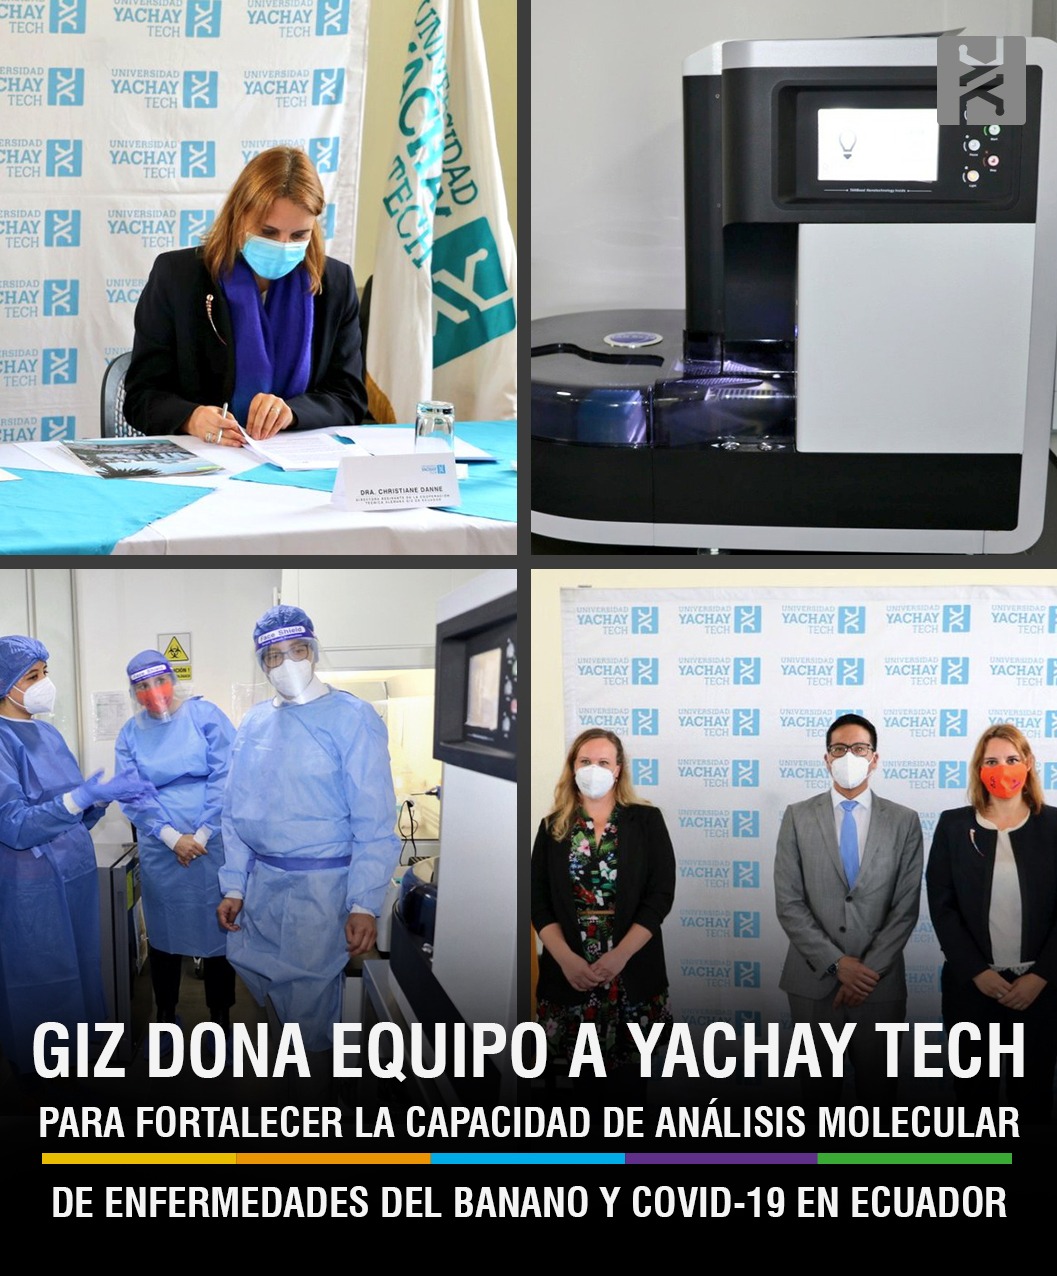 GIZ dona equipo a Yachay Tech para fortalecer la capacidad de análisis molecular de enfermedades del banano y de COVID-19 en Ecuador